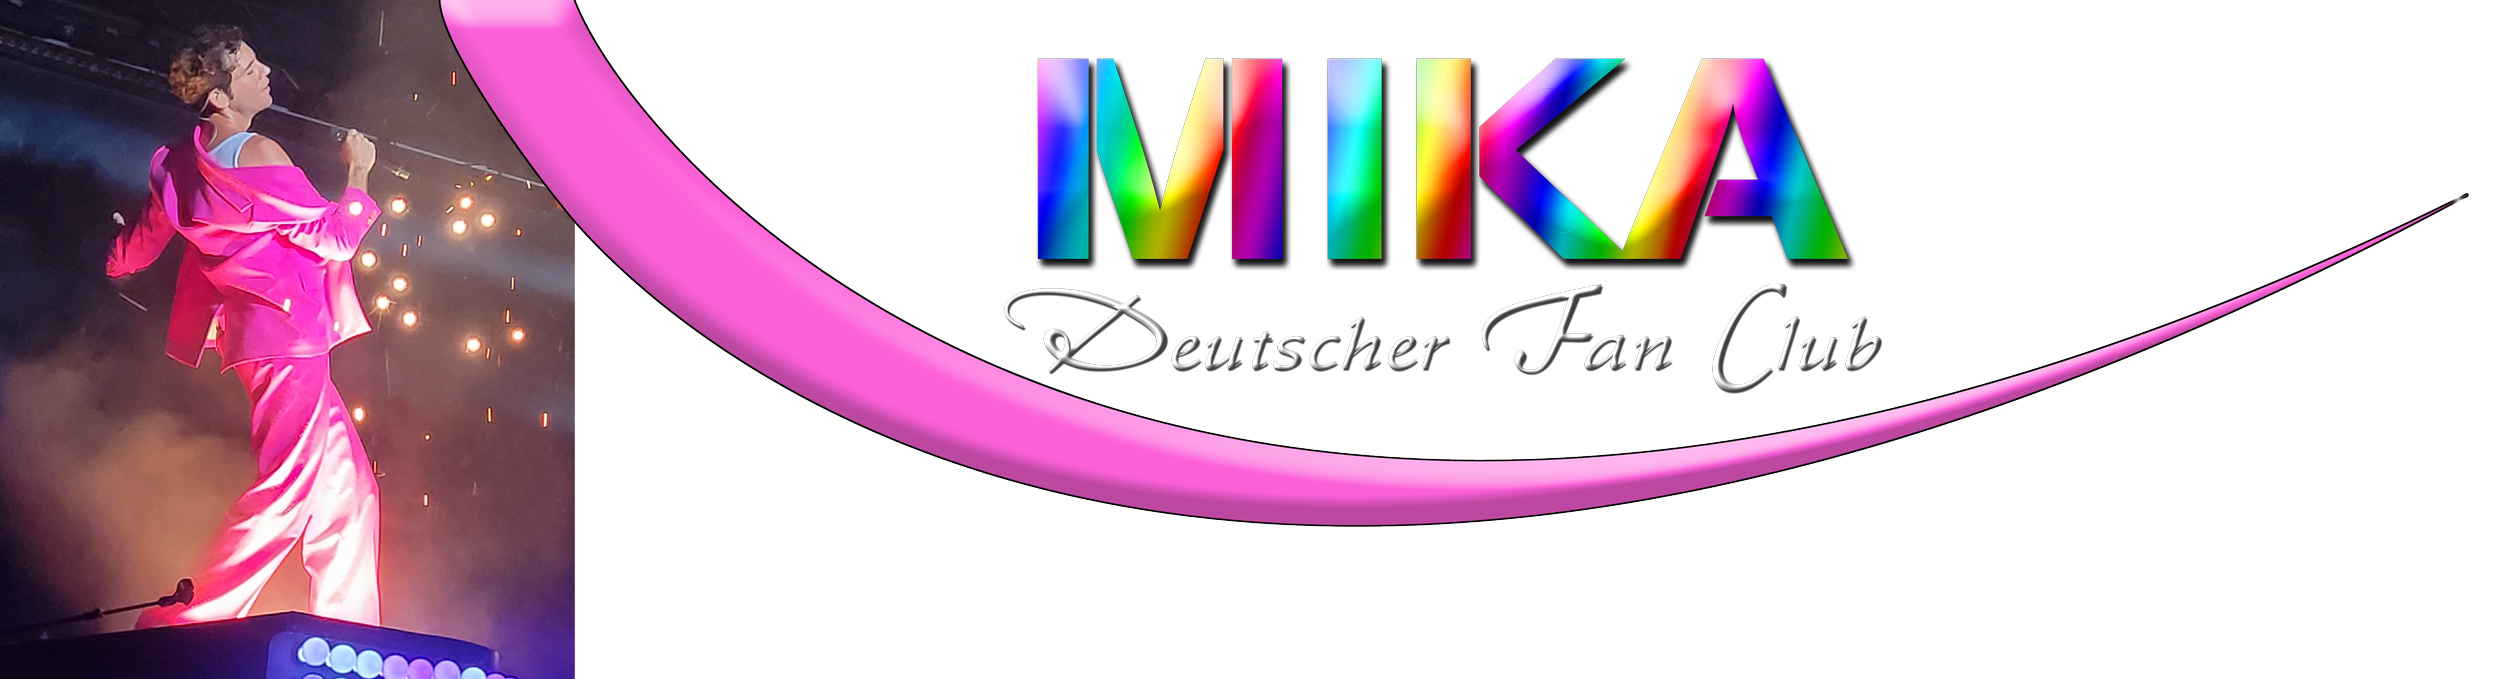 mikafanclub.de Logo